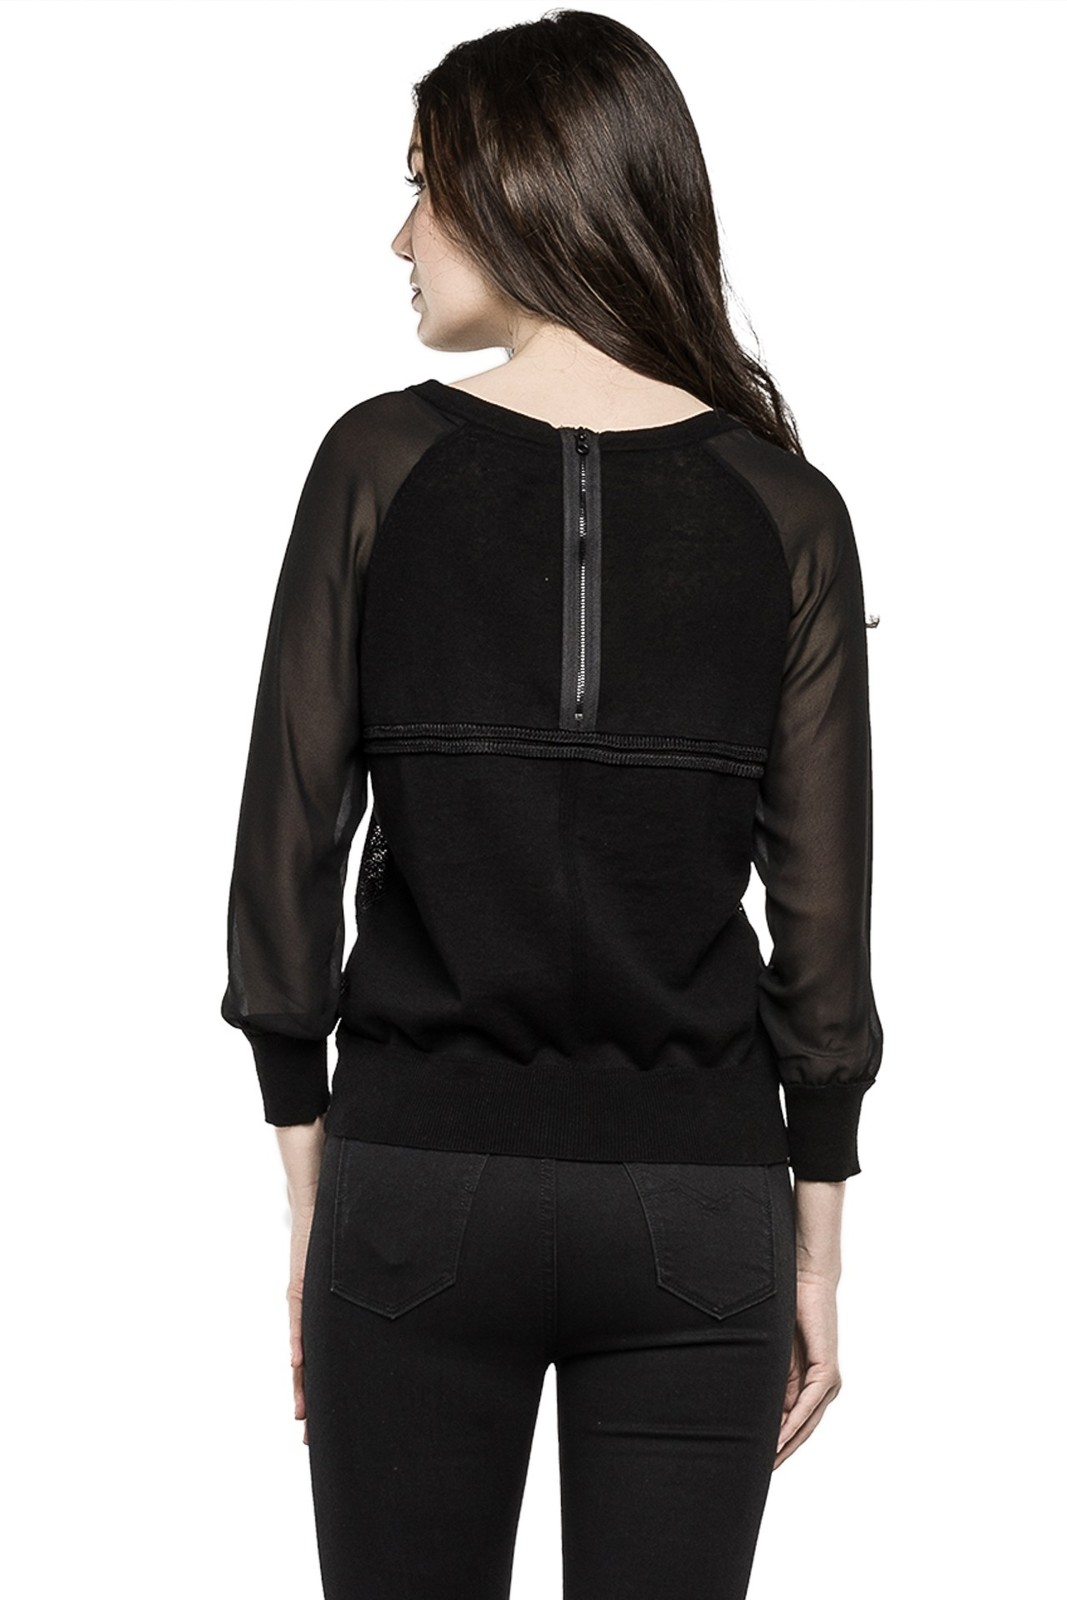 Replay női fekete pamut-lenvászon keverék pulcsi 2015.02.27 fotója